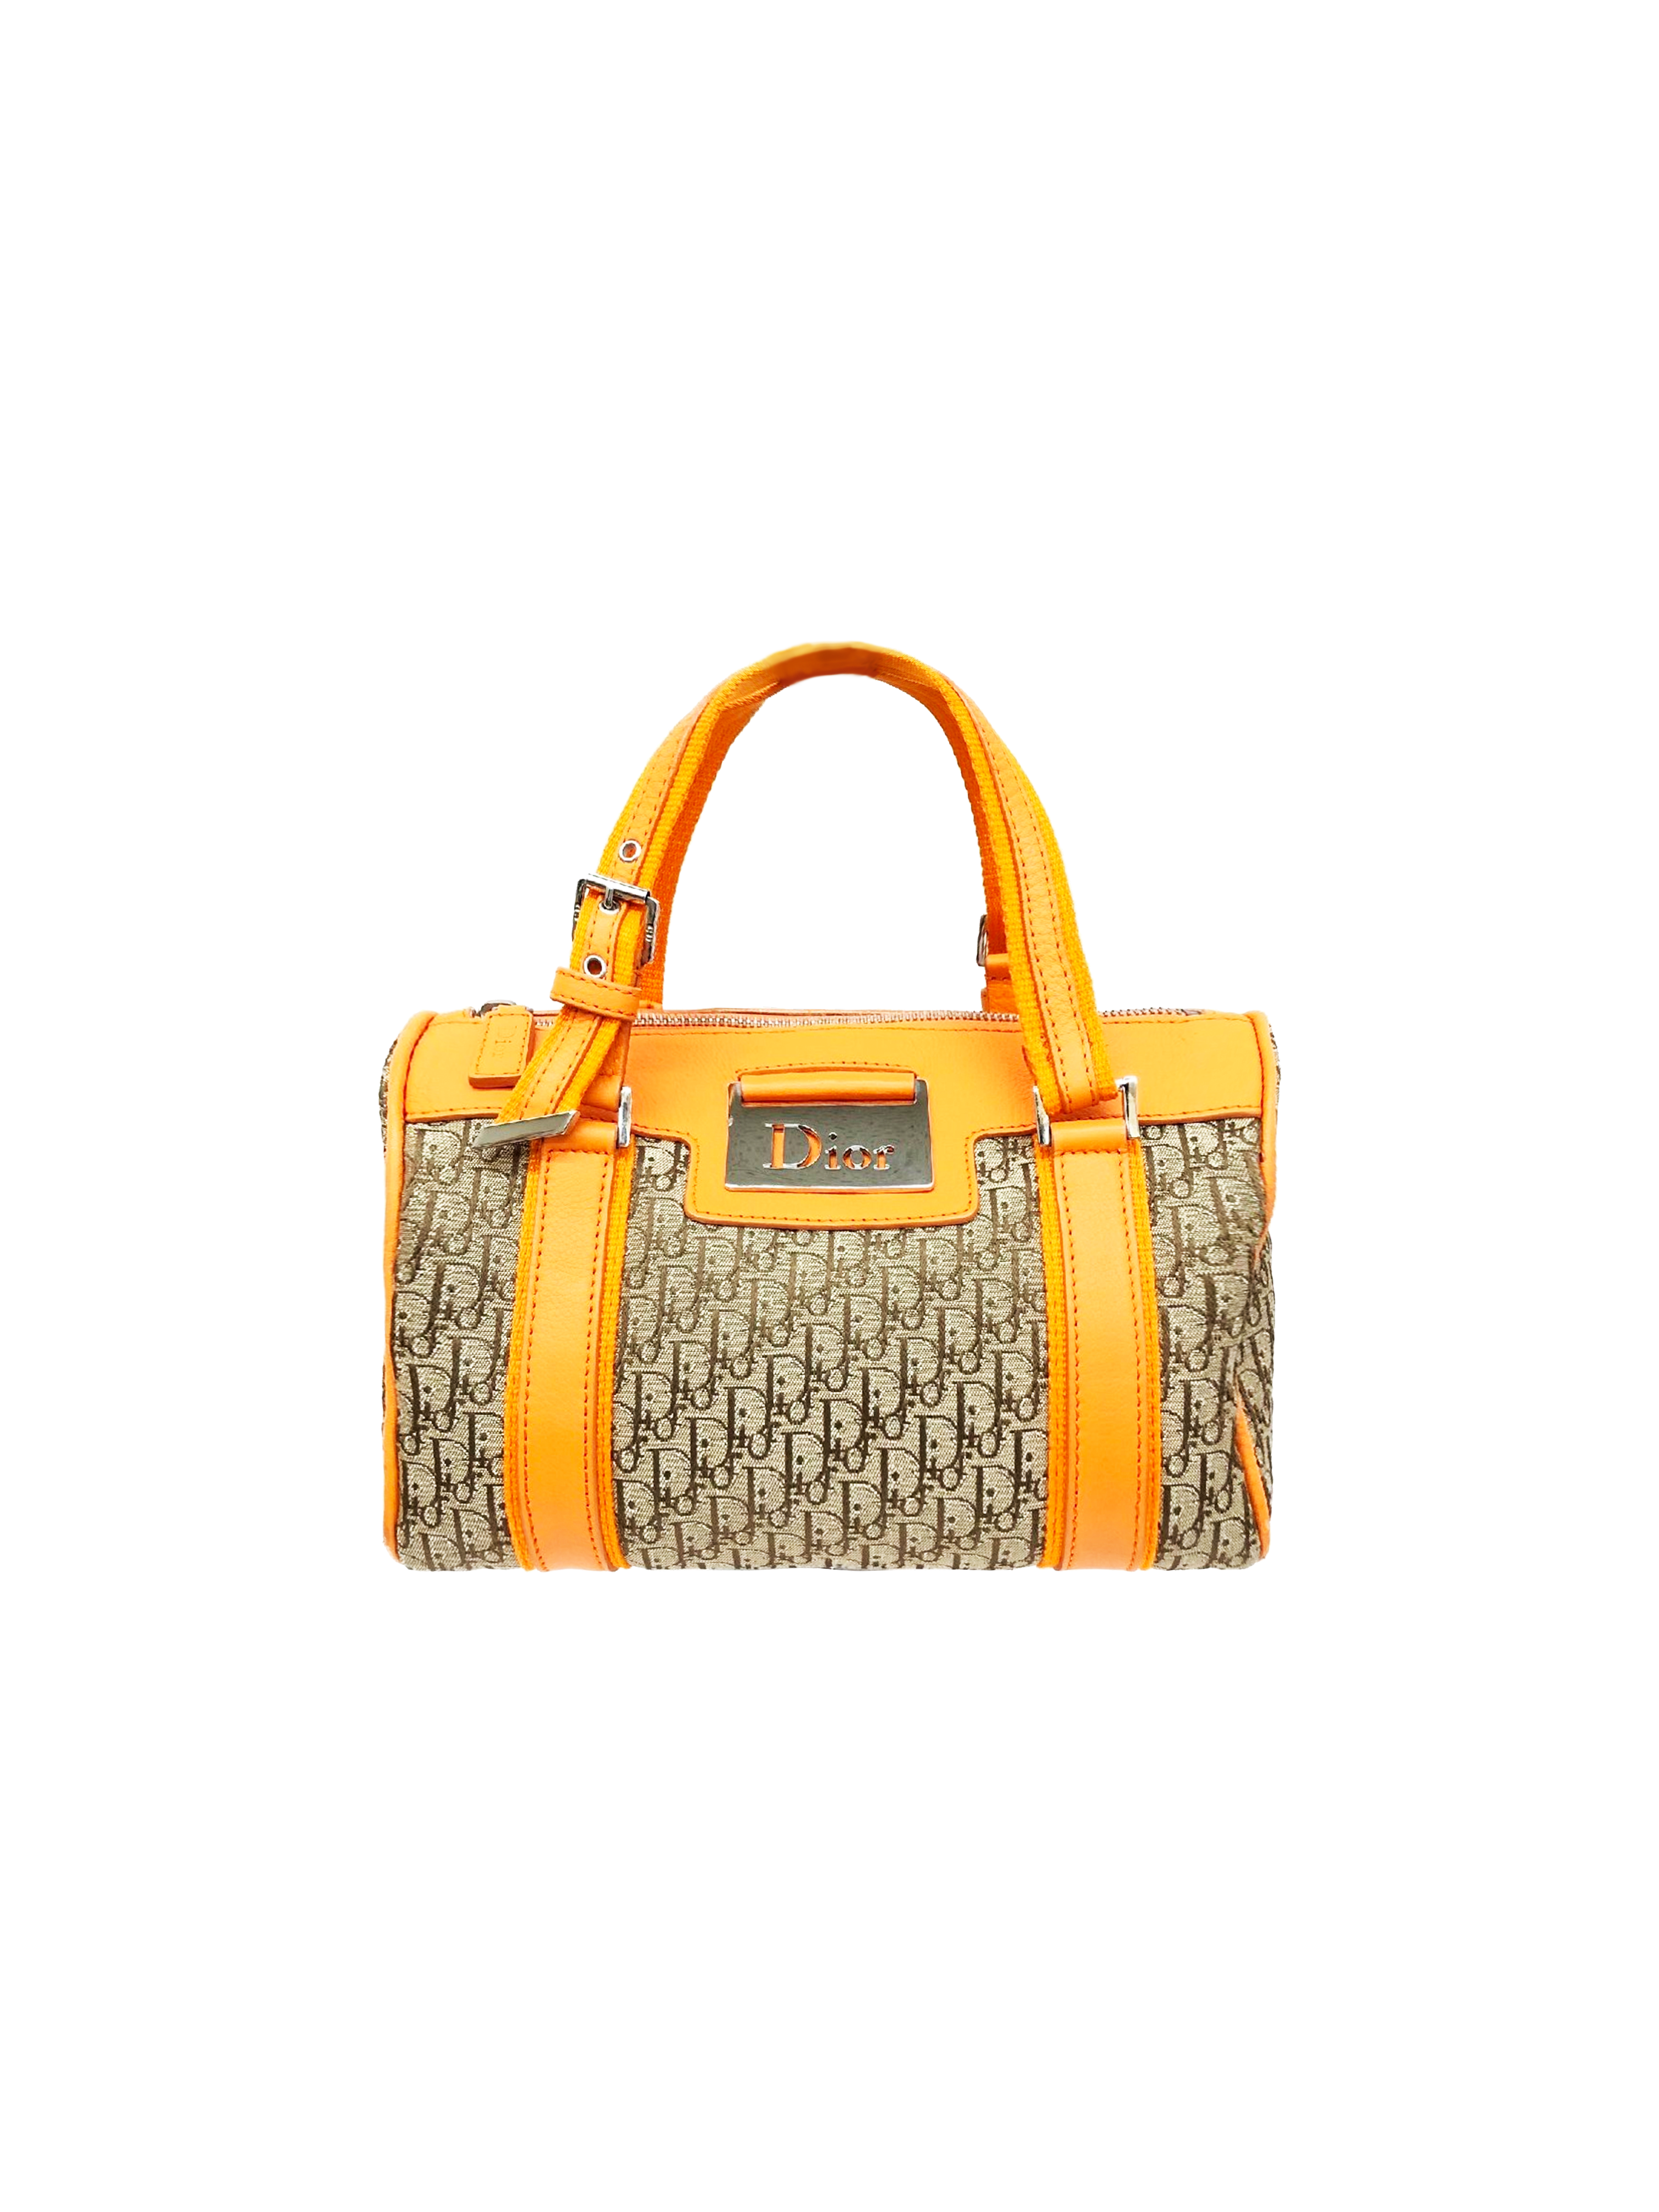 Christian Dior 2000s Orange Leather Trotter Bag